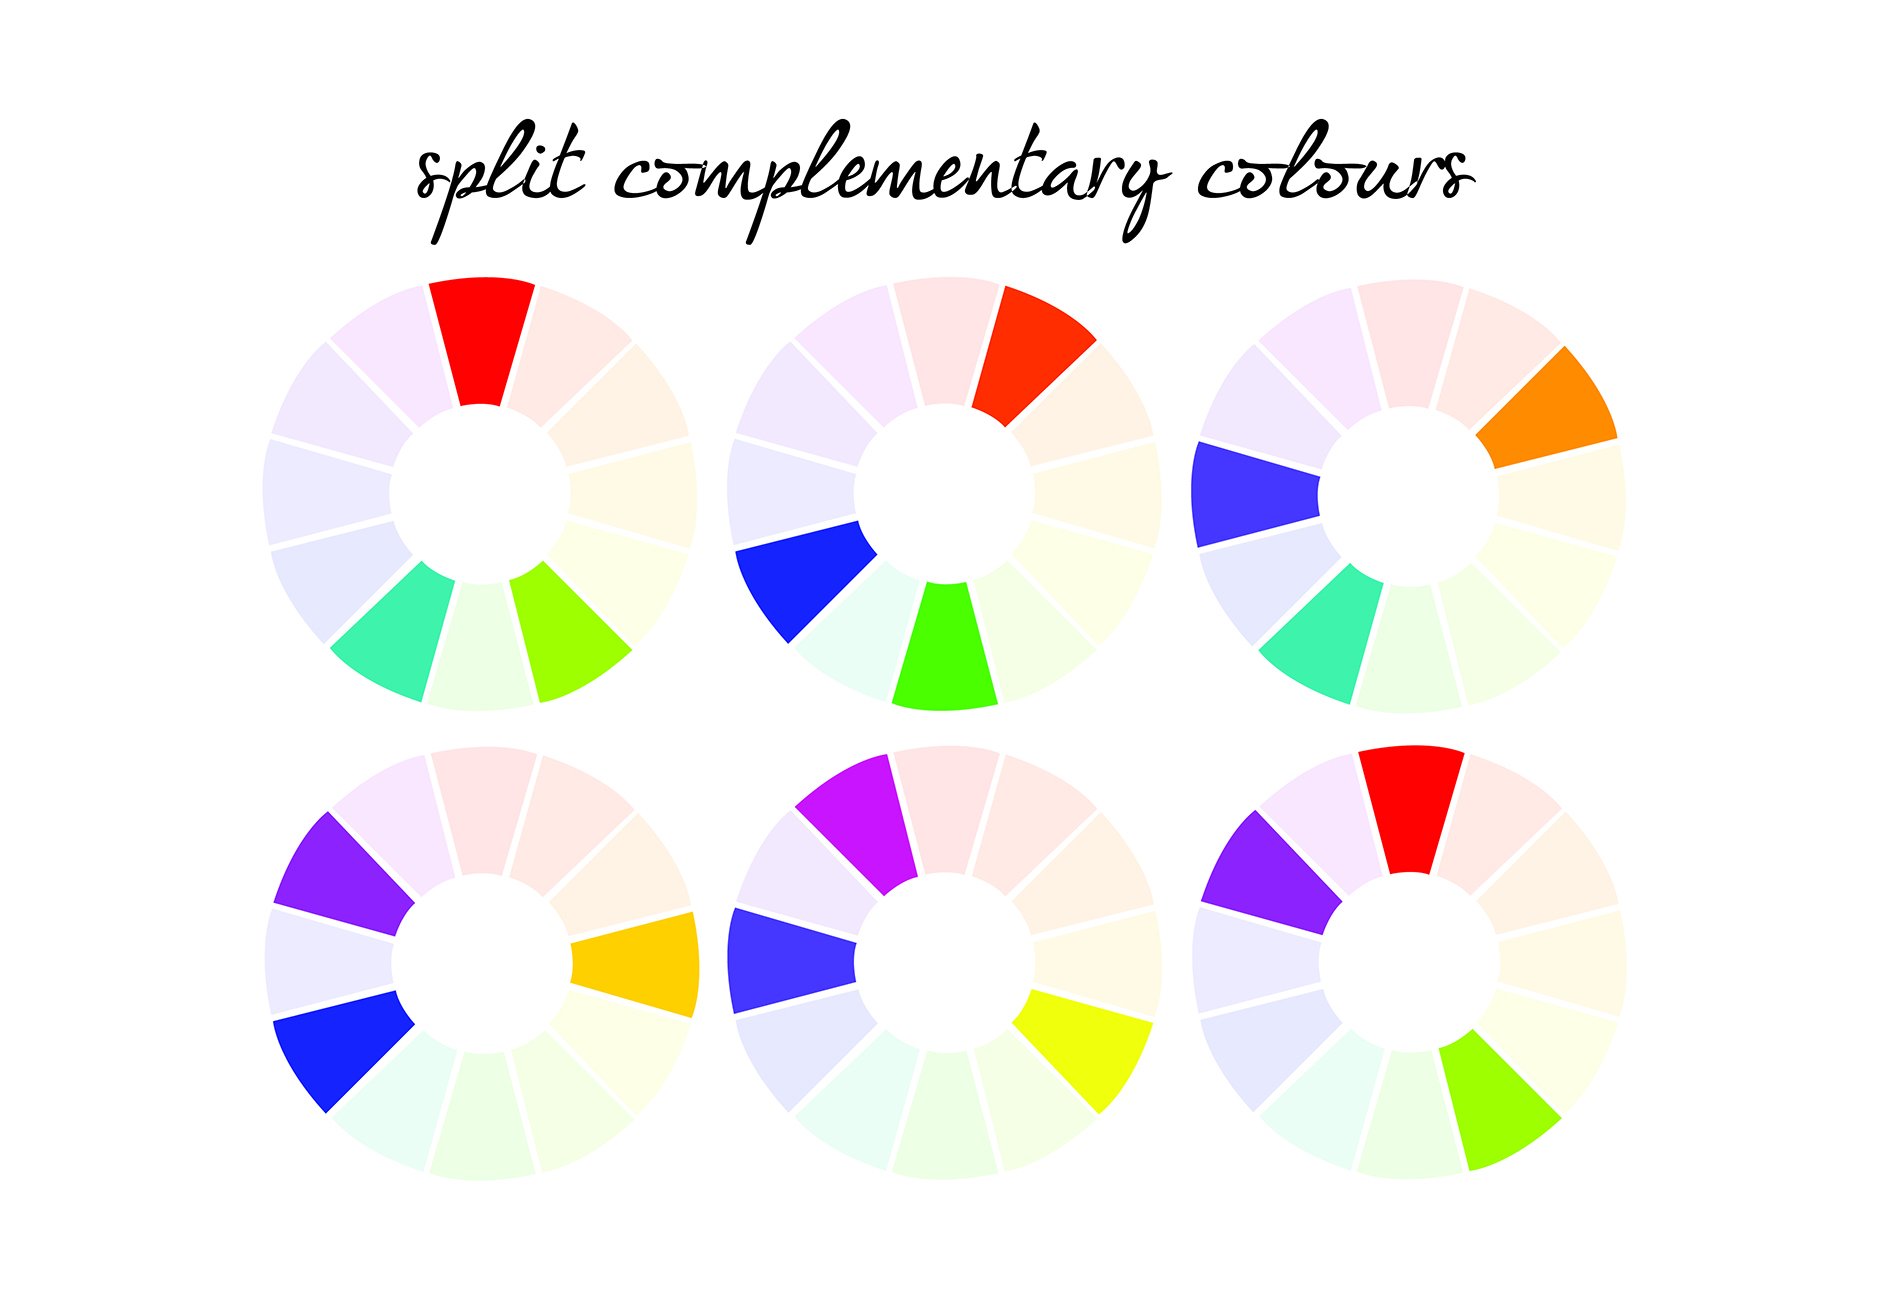 Сплит комплементарная цветовая схема. Круг Иттена комплиментарные цвета. Сплит комплиментарная схема. Комплементарные цвета в цветовом круге.